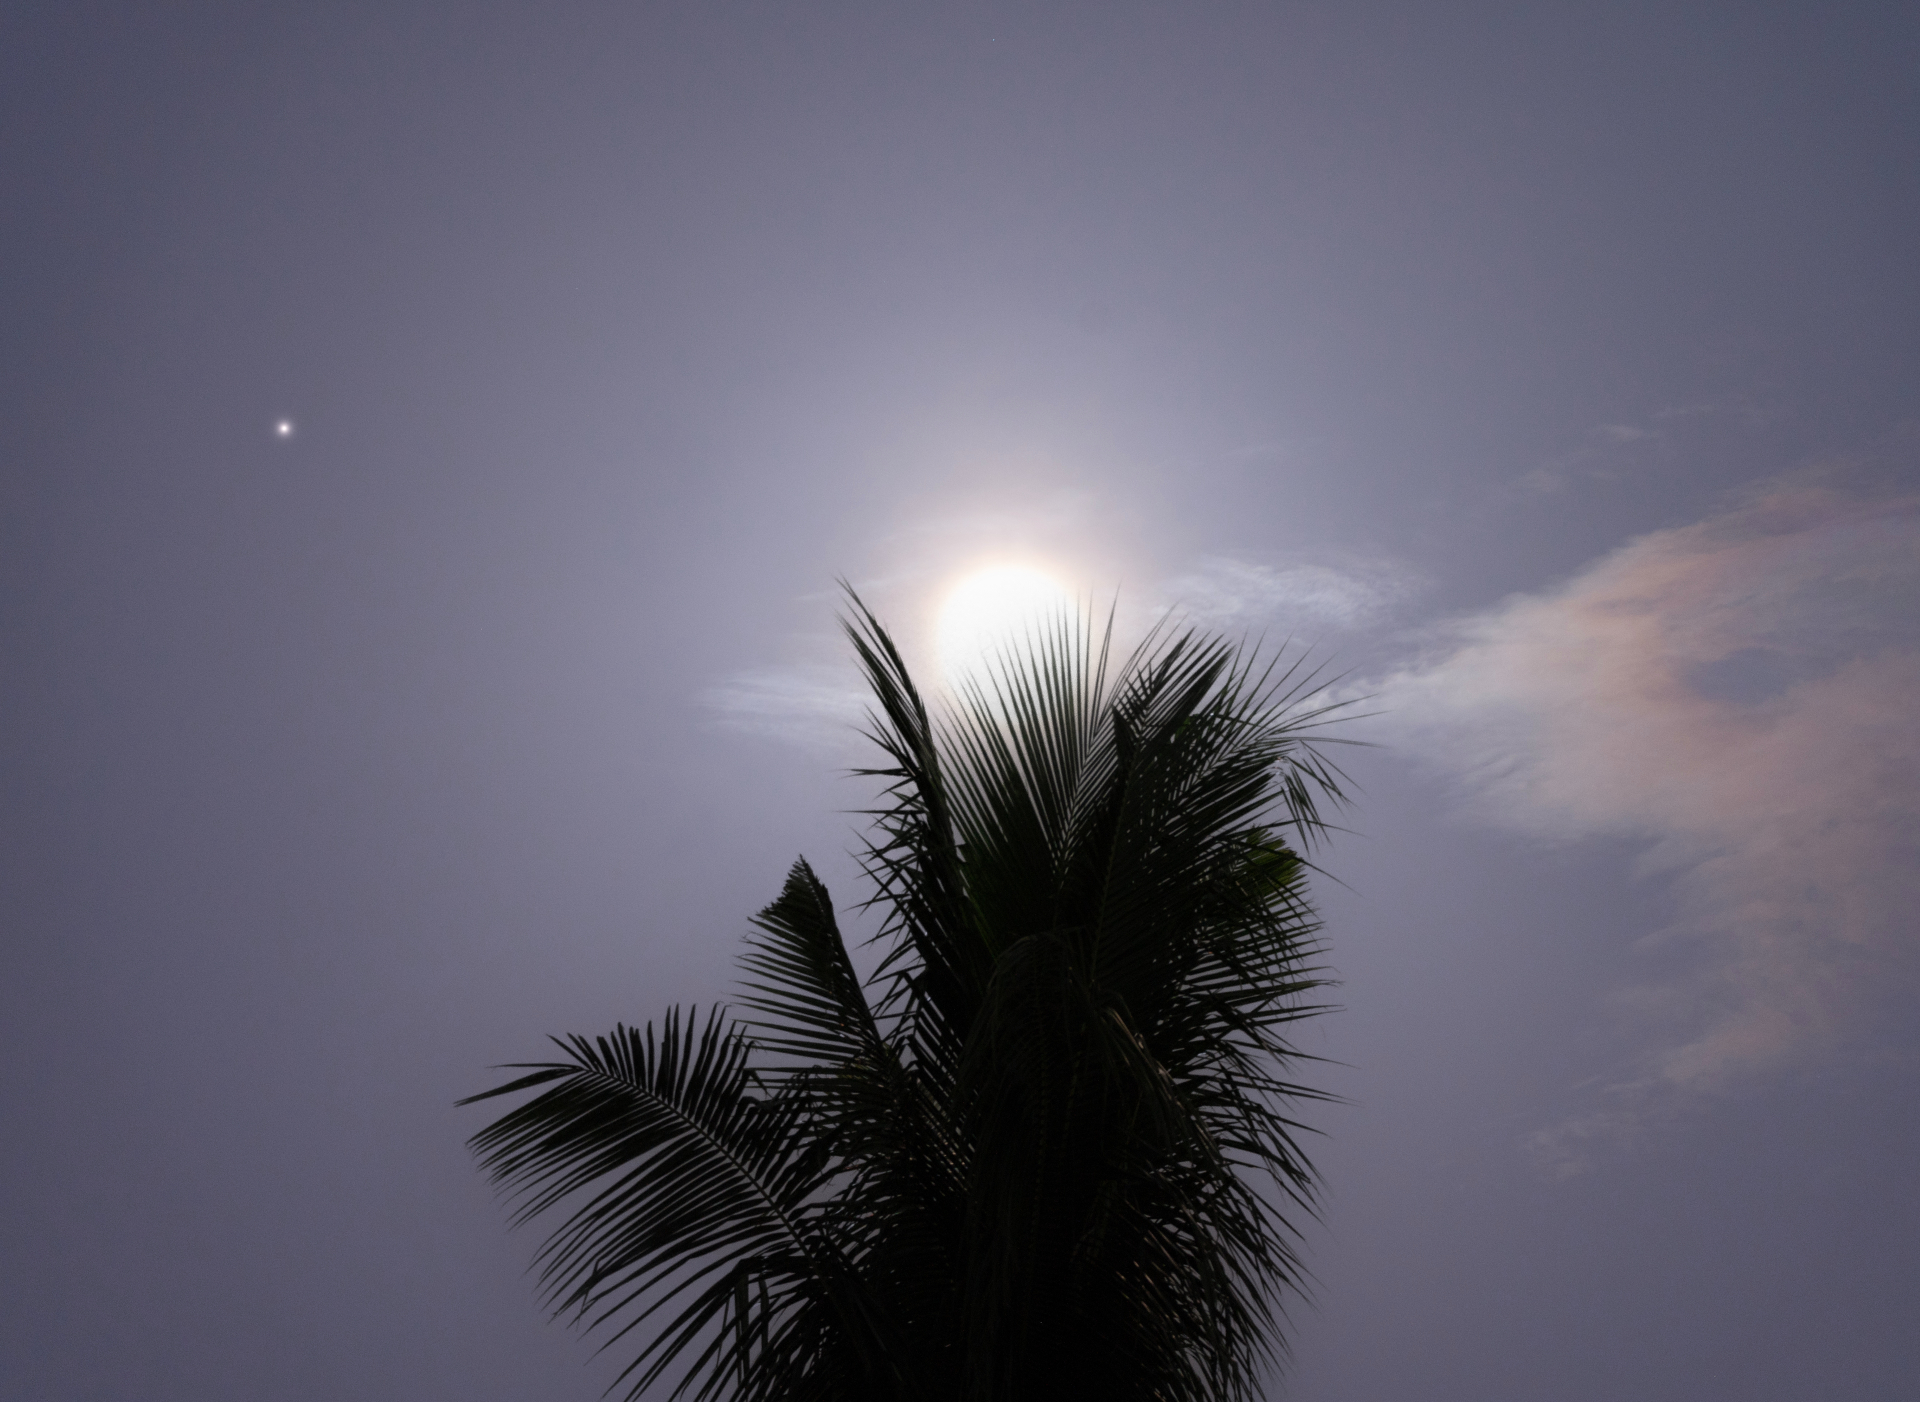 Superblauer Mond, der hell hinter einer Palme scheint, wobei links vom Mond der kleine Punkt des Saturn sichtbar ist.